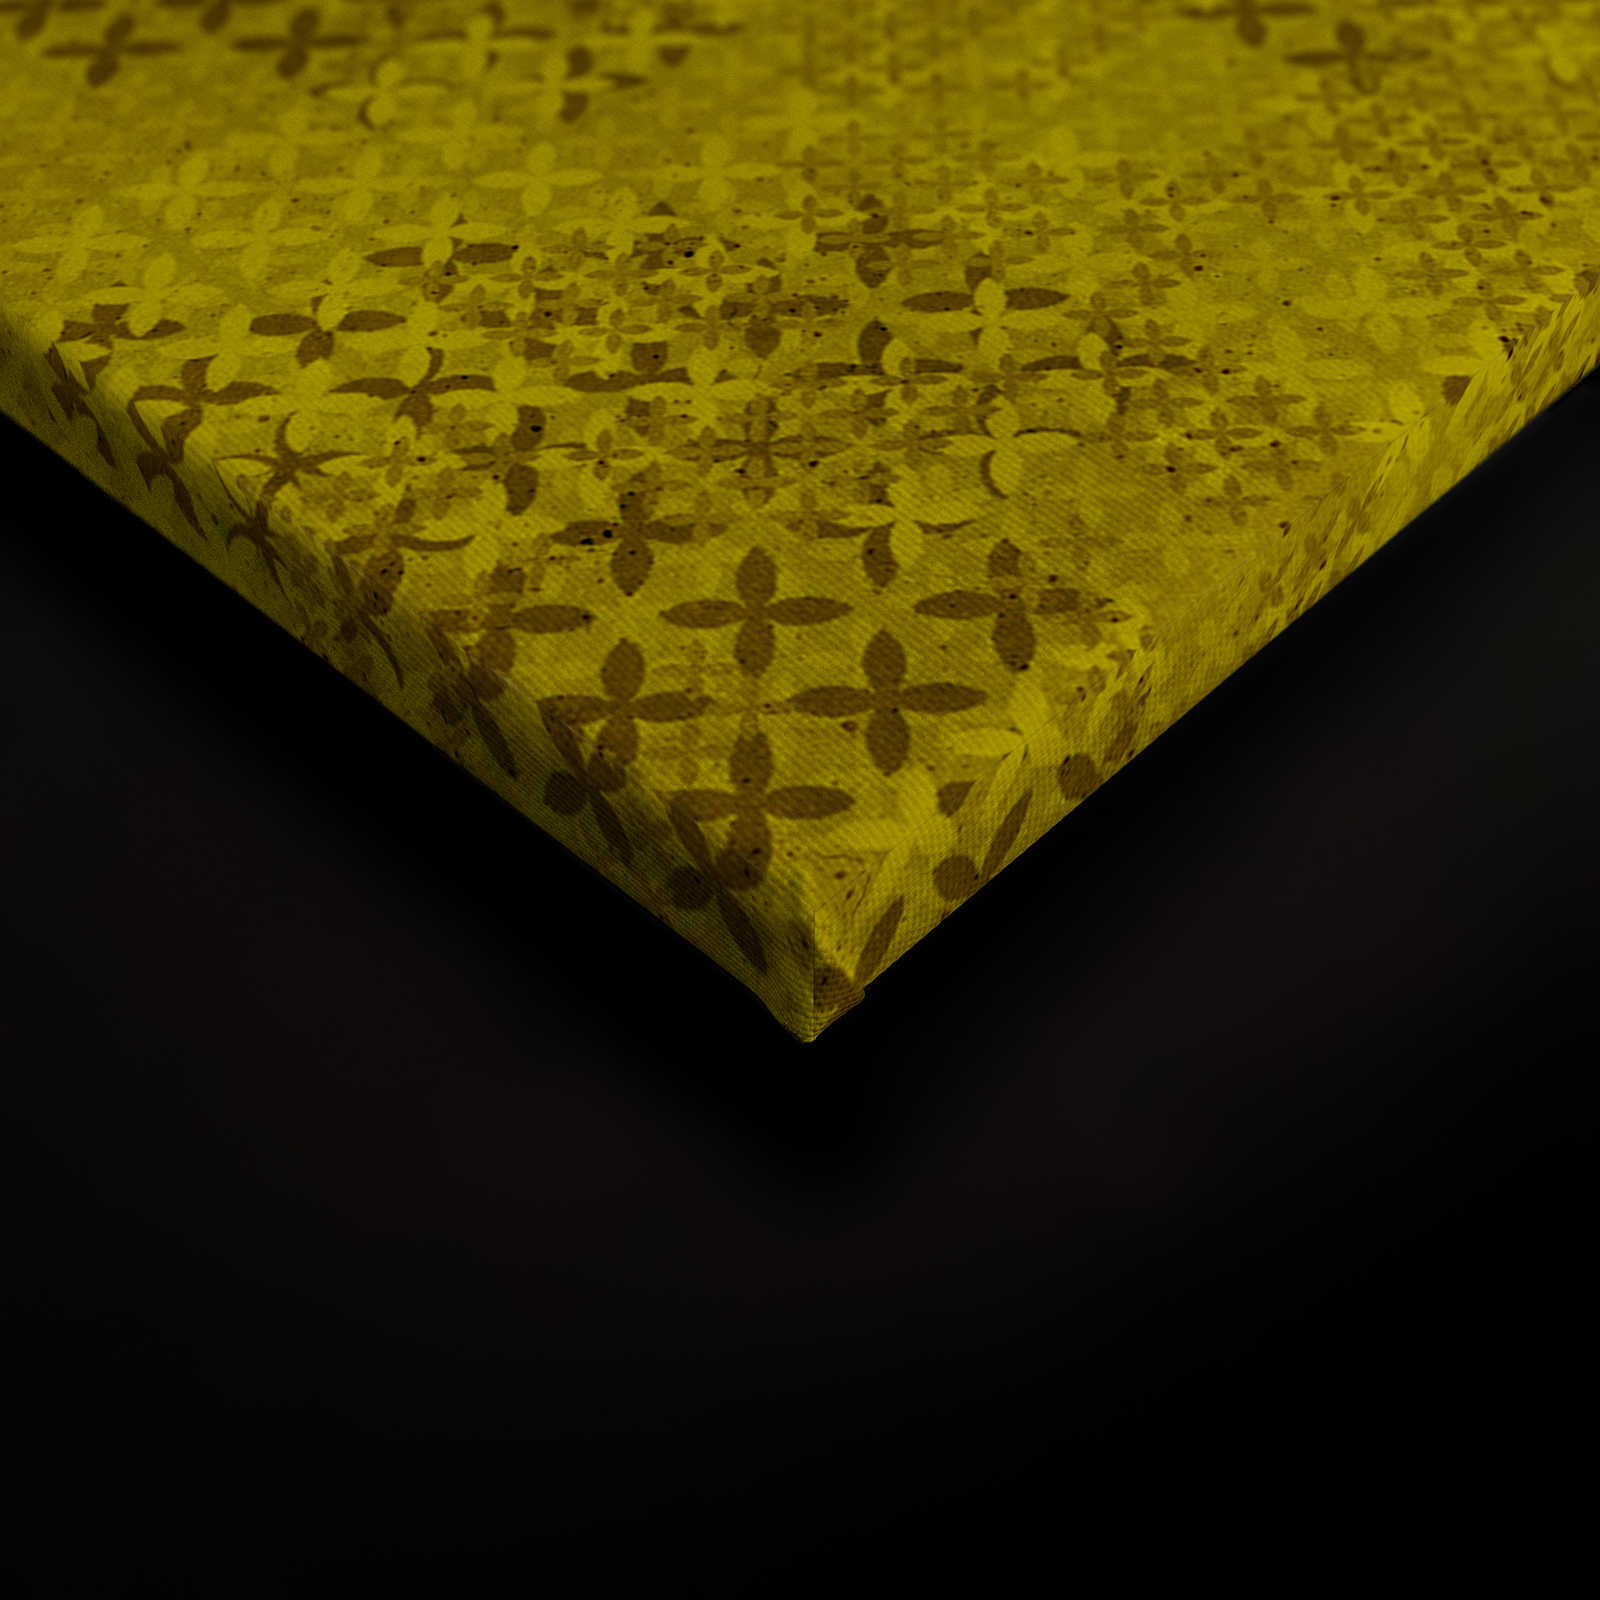             Pixel Leinwandbild Kreuzstich Muster – 0,90 m x 0,60 m
        